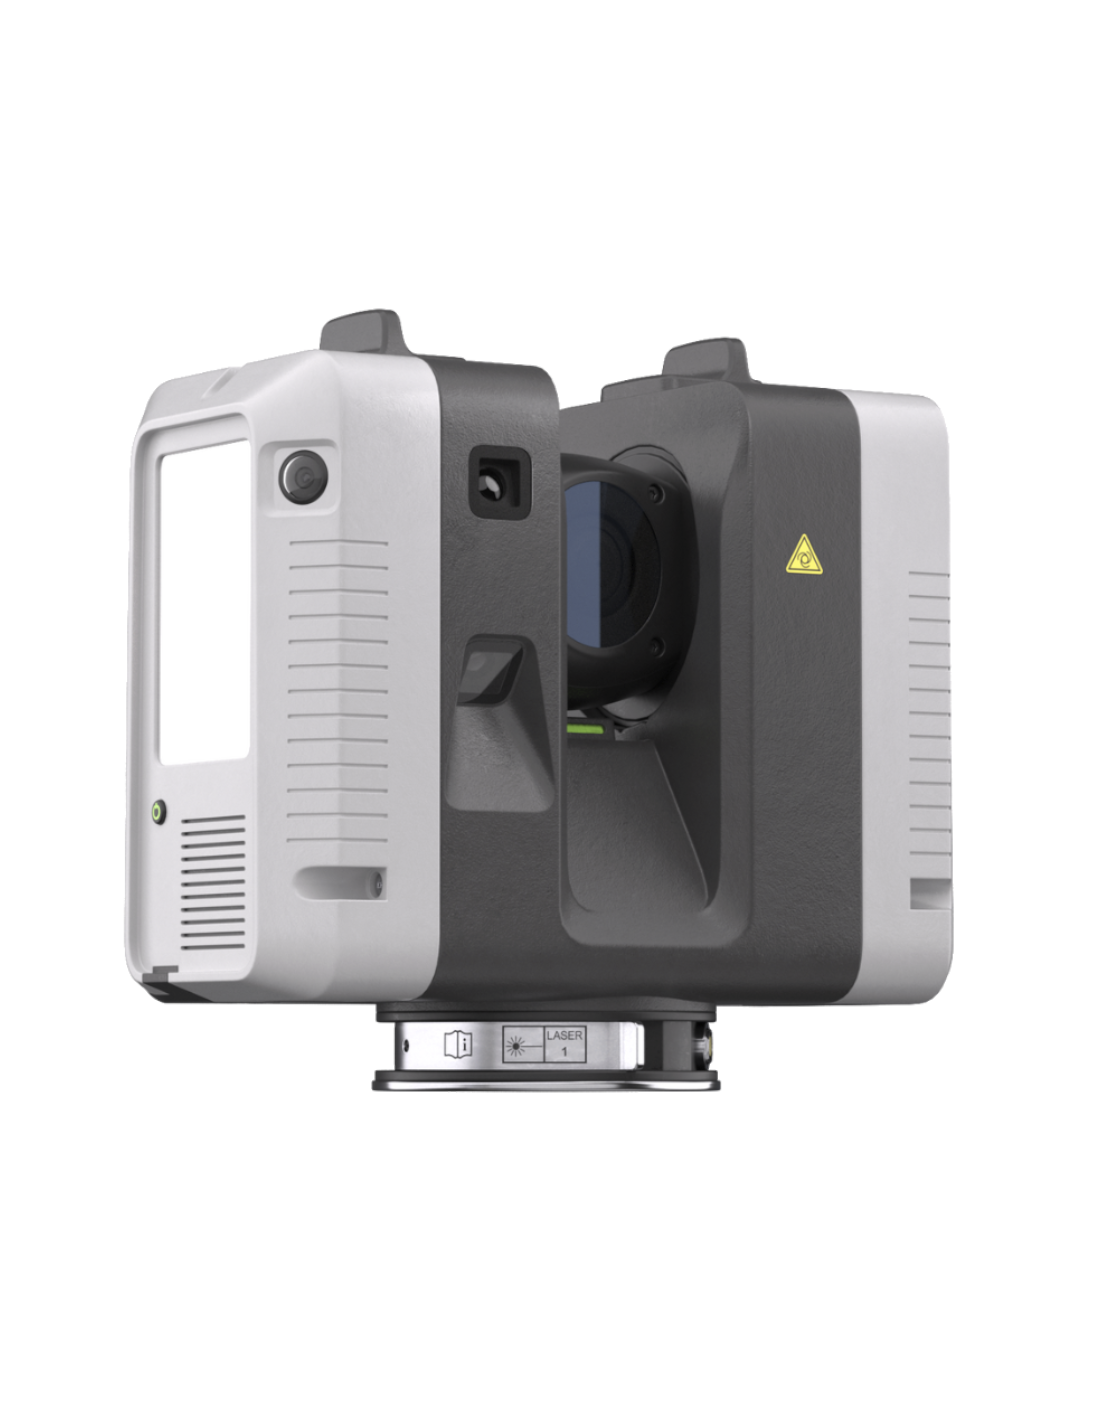 Artec 3D Ray II - 3D Scanner